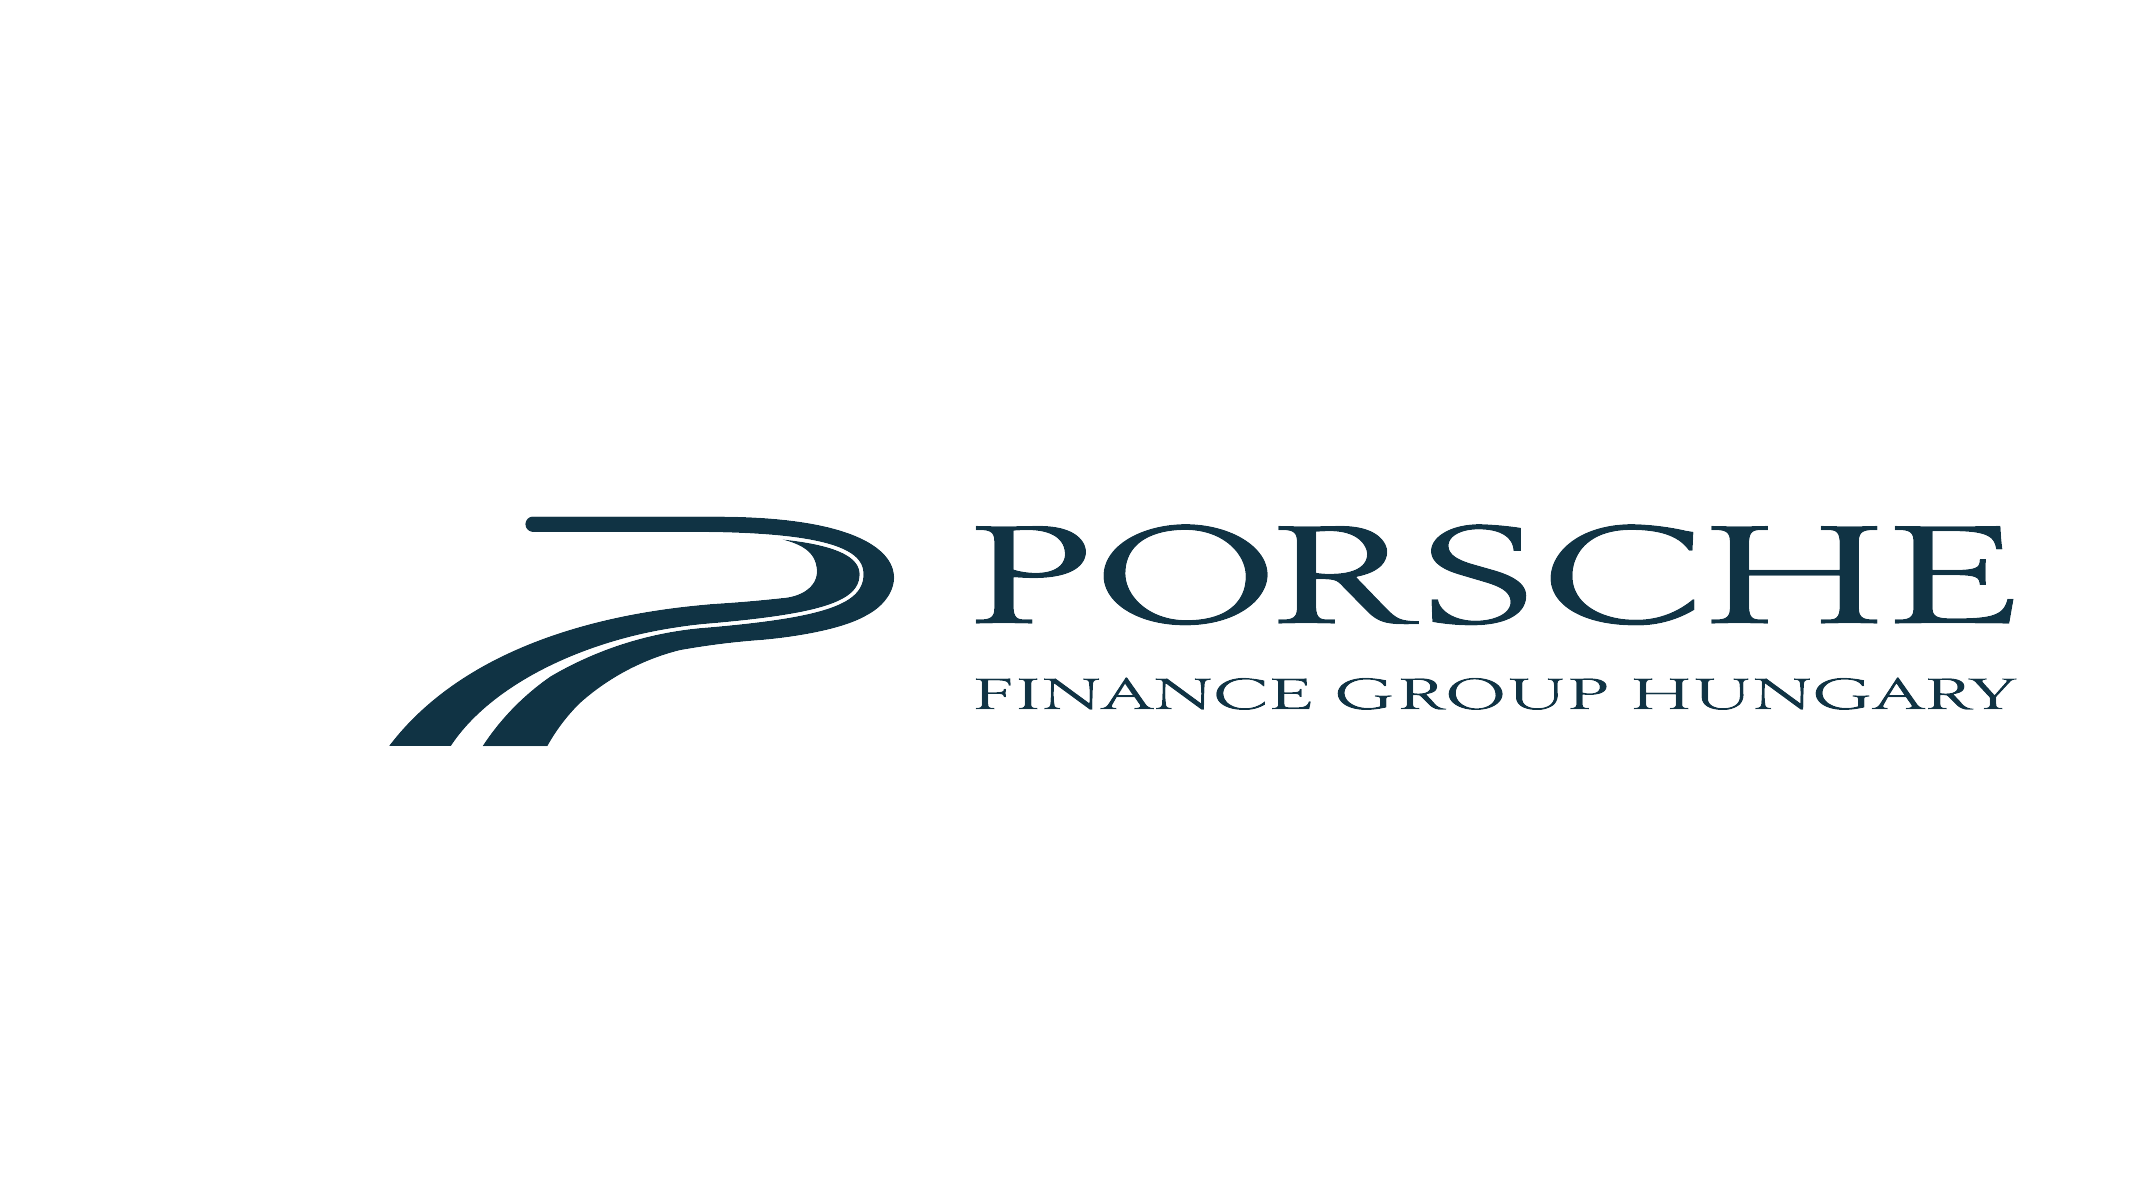 Porsche Finance Group Hungary logo